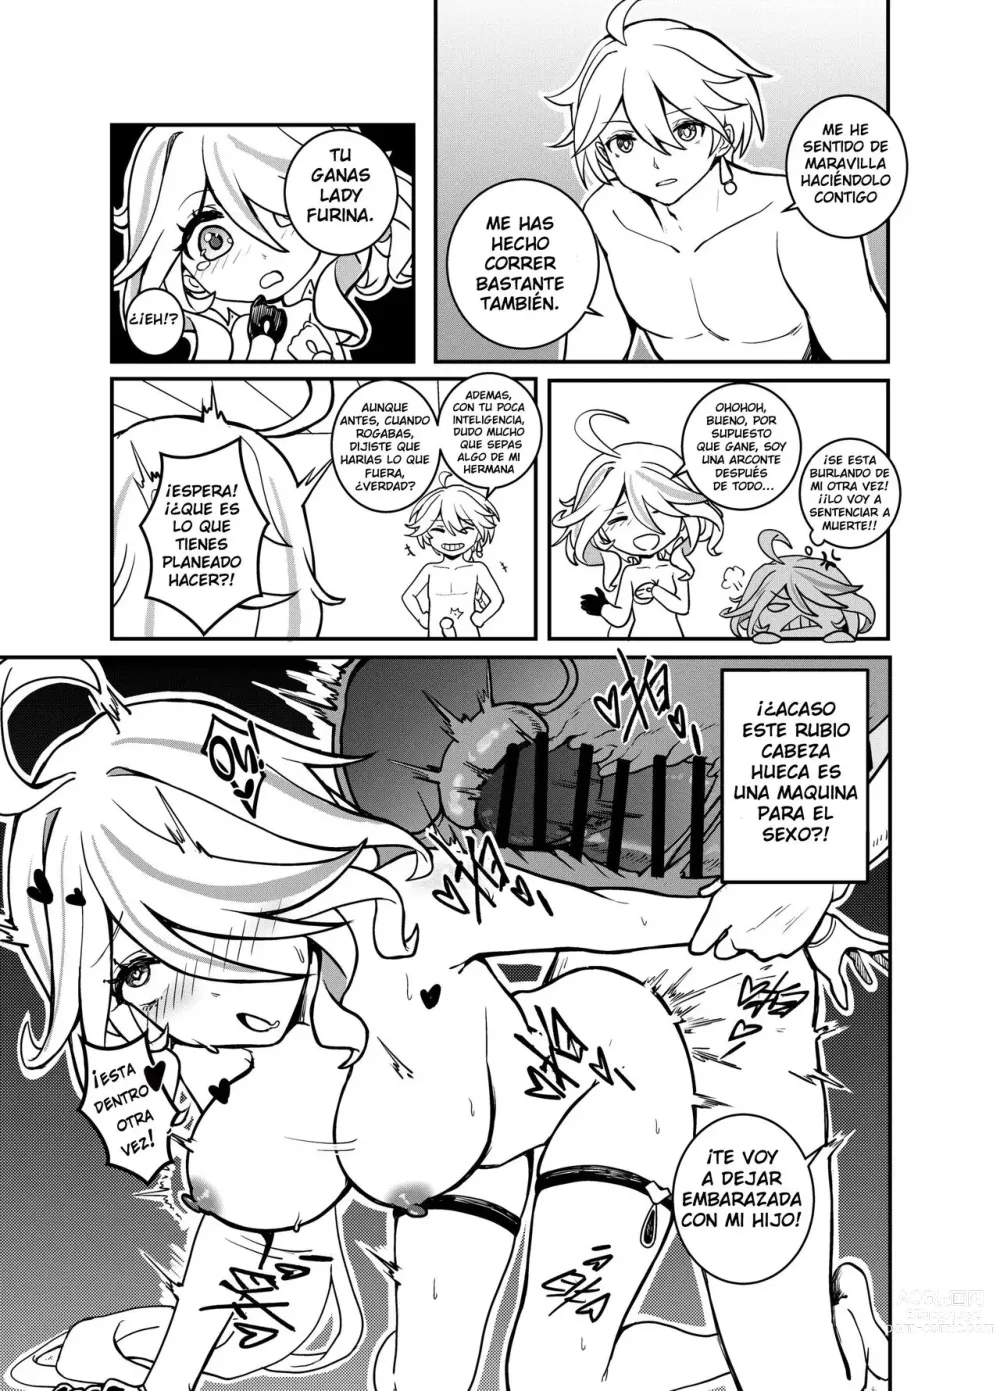 Page 11 of doujinshi Furina Estúpida